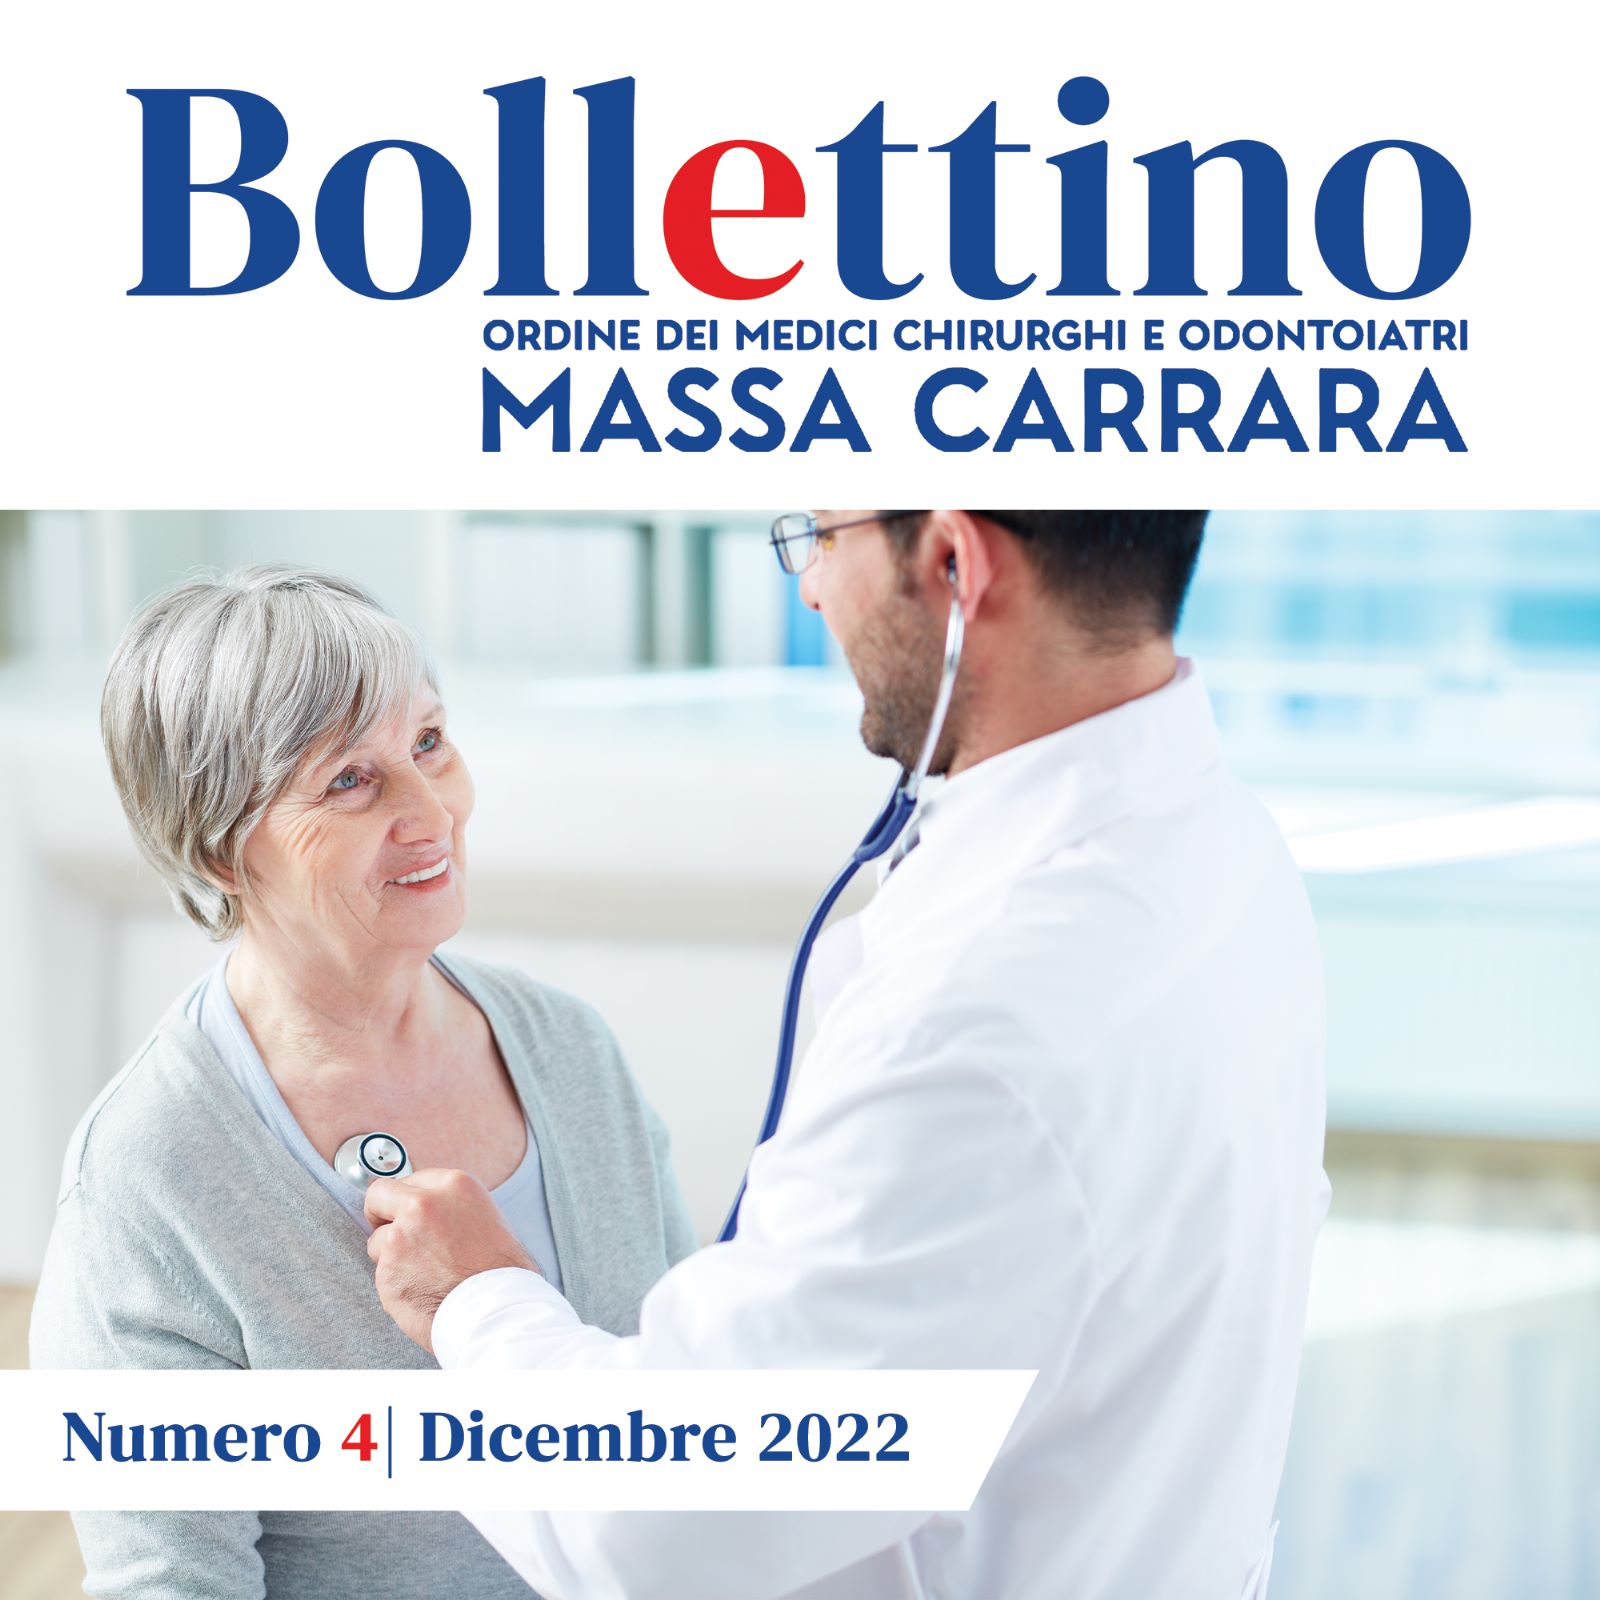 Clicca per accedere all'articolo Bollettino OMCeO - Dicembre 2022